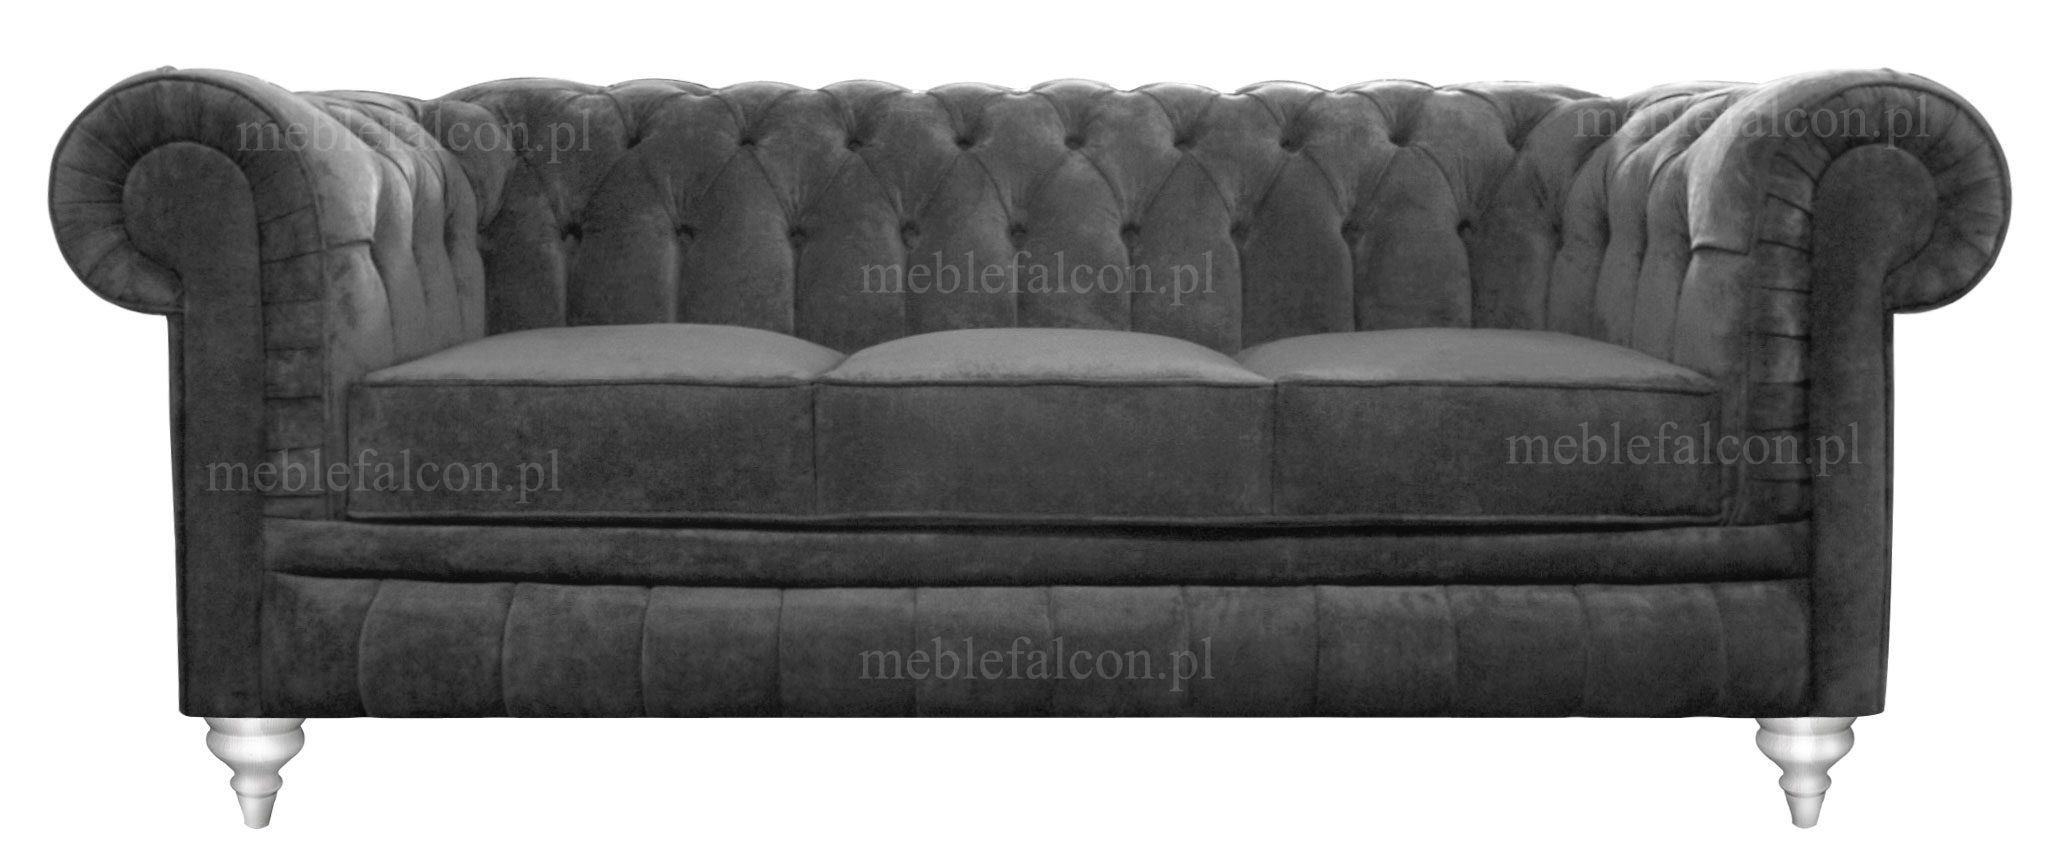 fenomenalna szara sofa pluszowa stanowi harmonijną i szykowną ozdobę każdego wnętrza sofa stylowa